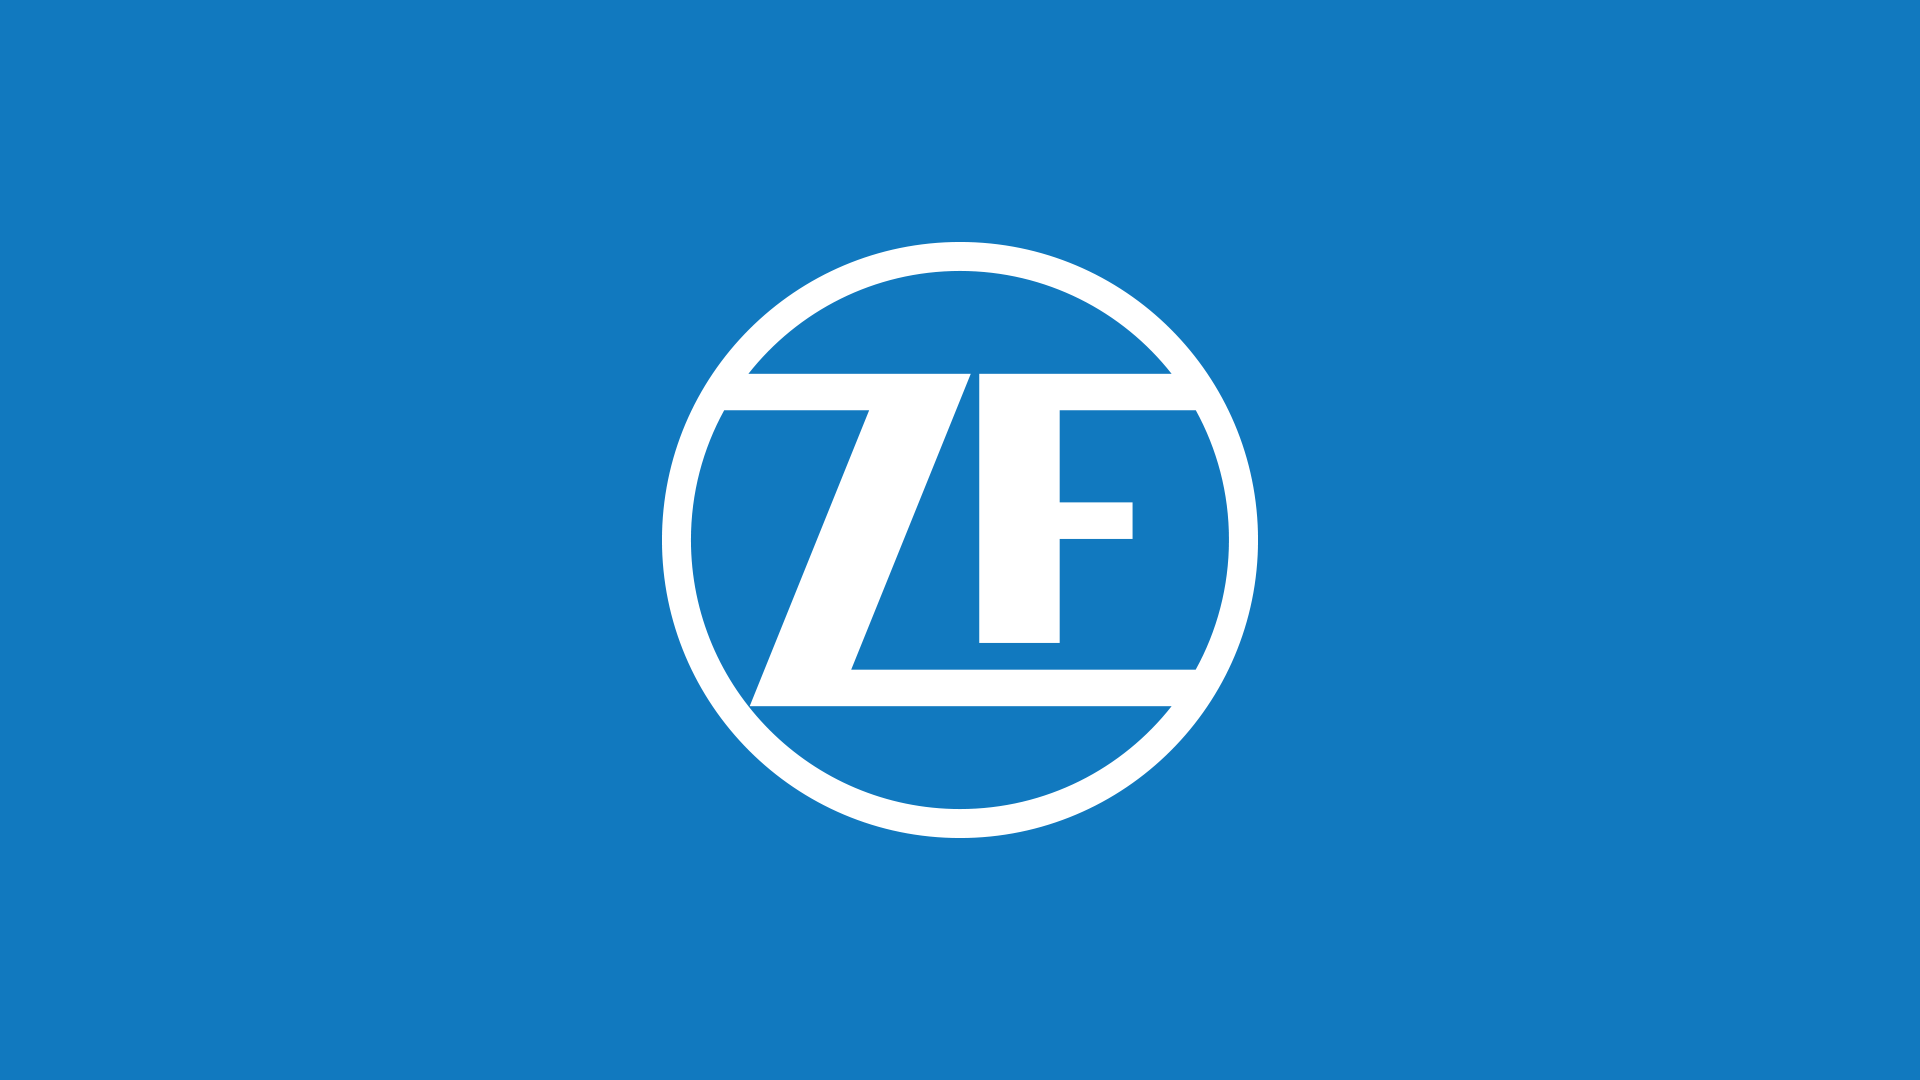 ZF-bg